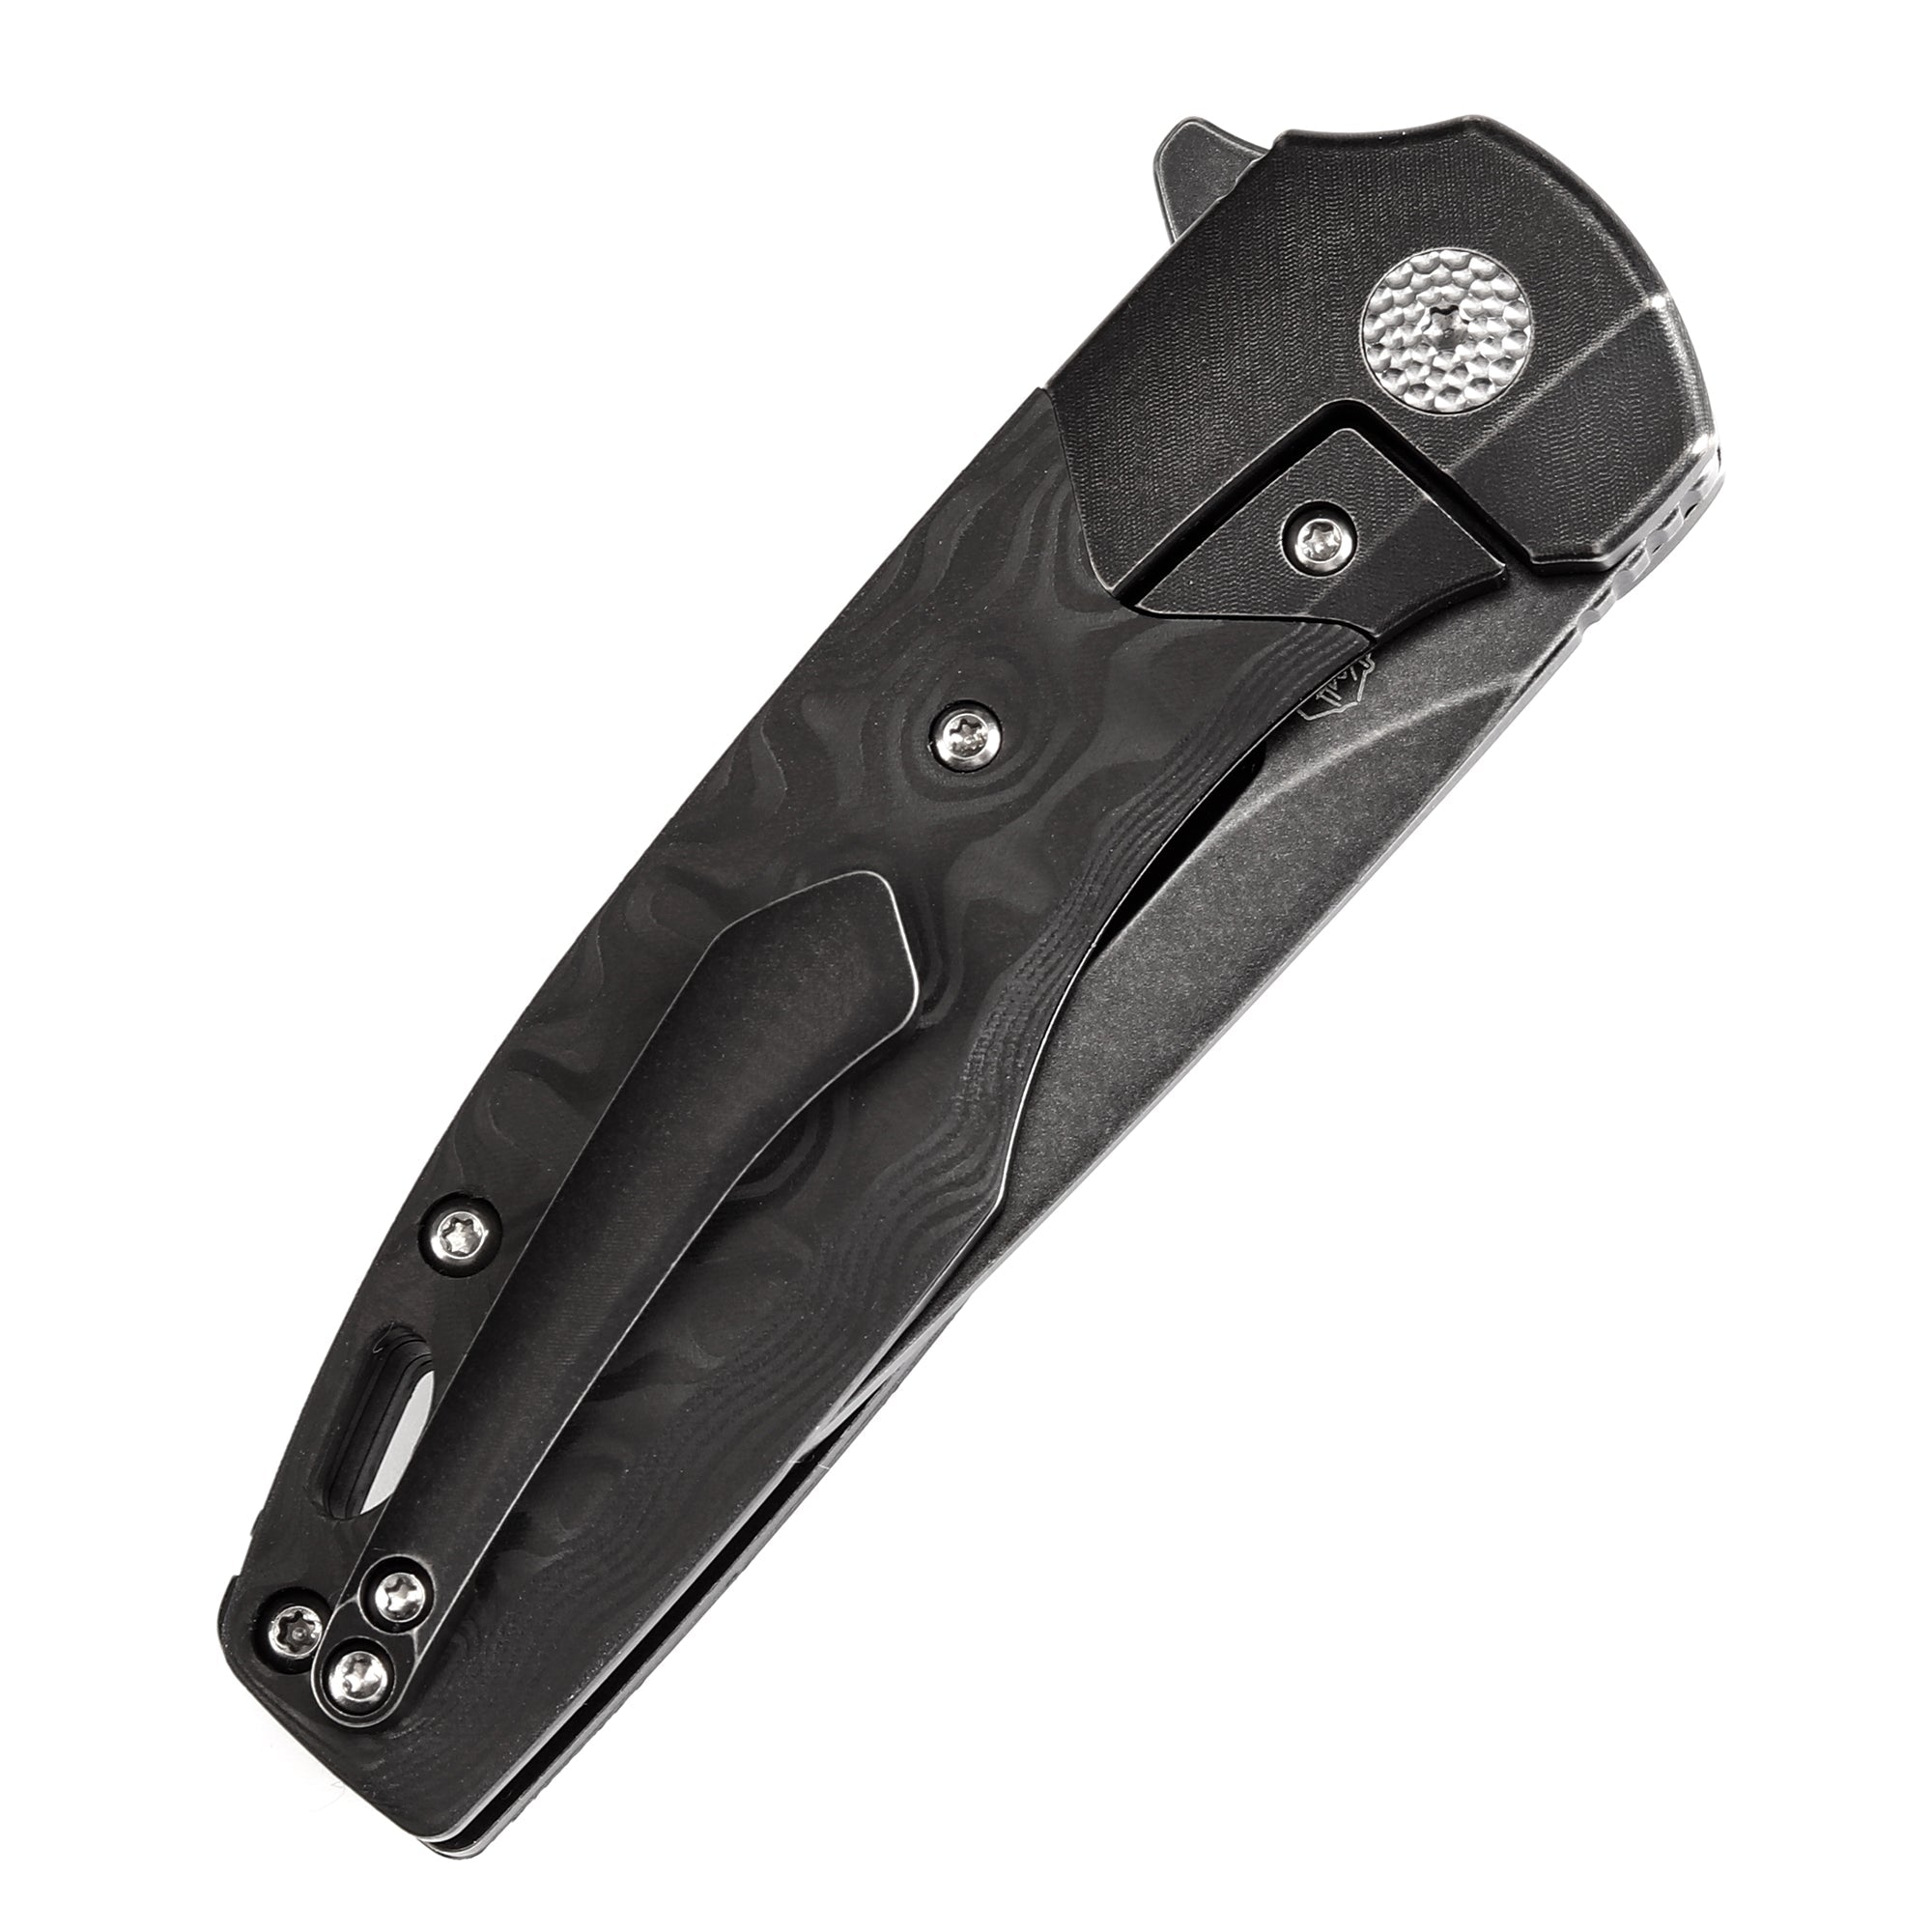 Kansept Cassowary K2065B3 Black CPM-S35VN Blade Titanium+Carbon Fiber Handle Edc Flipper Knife